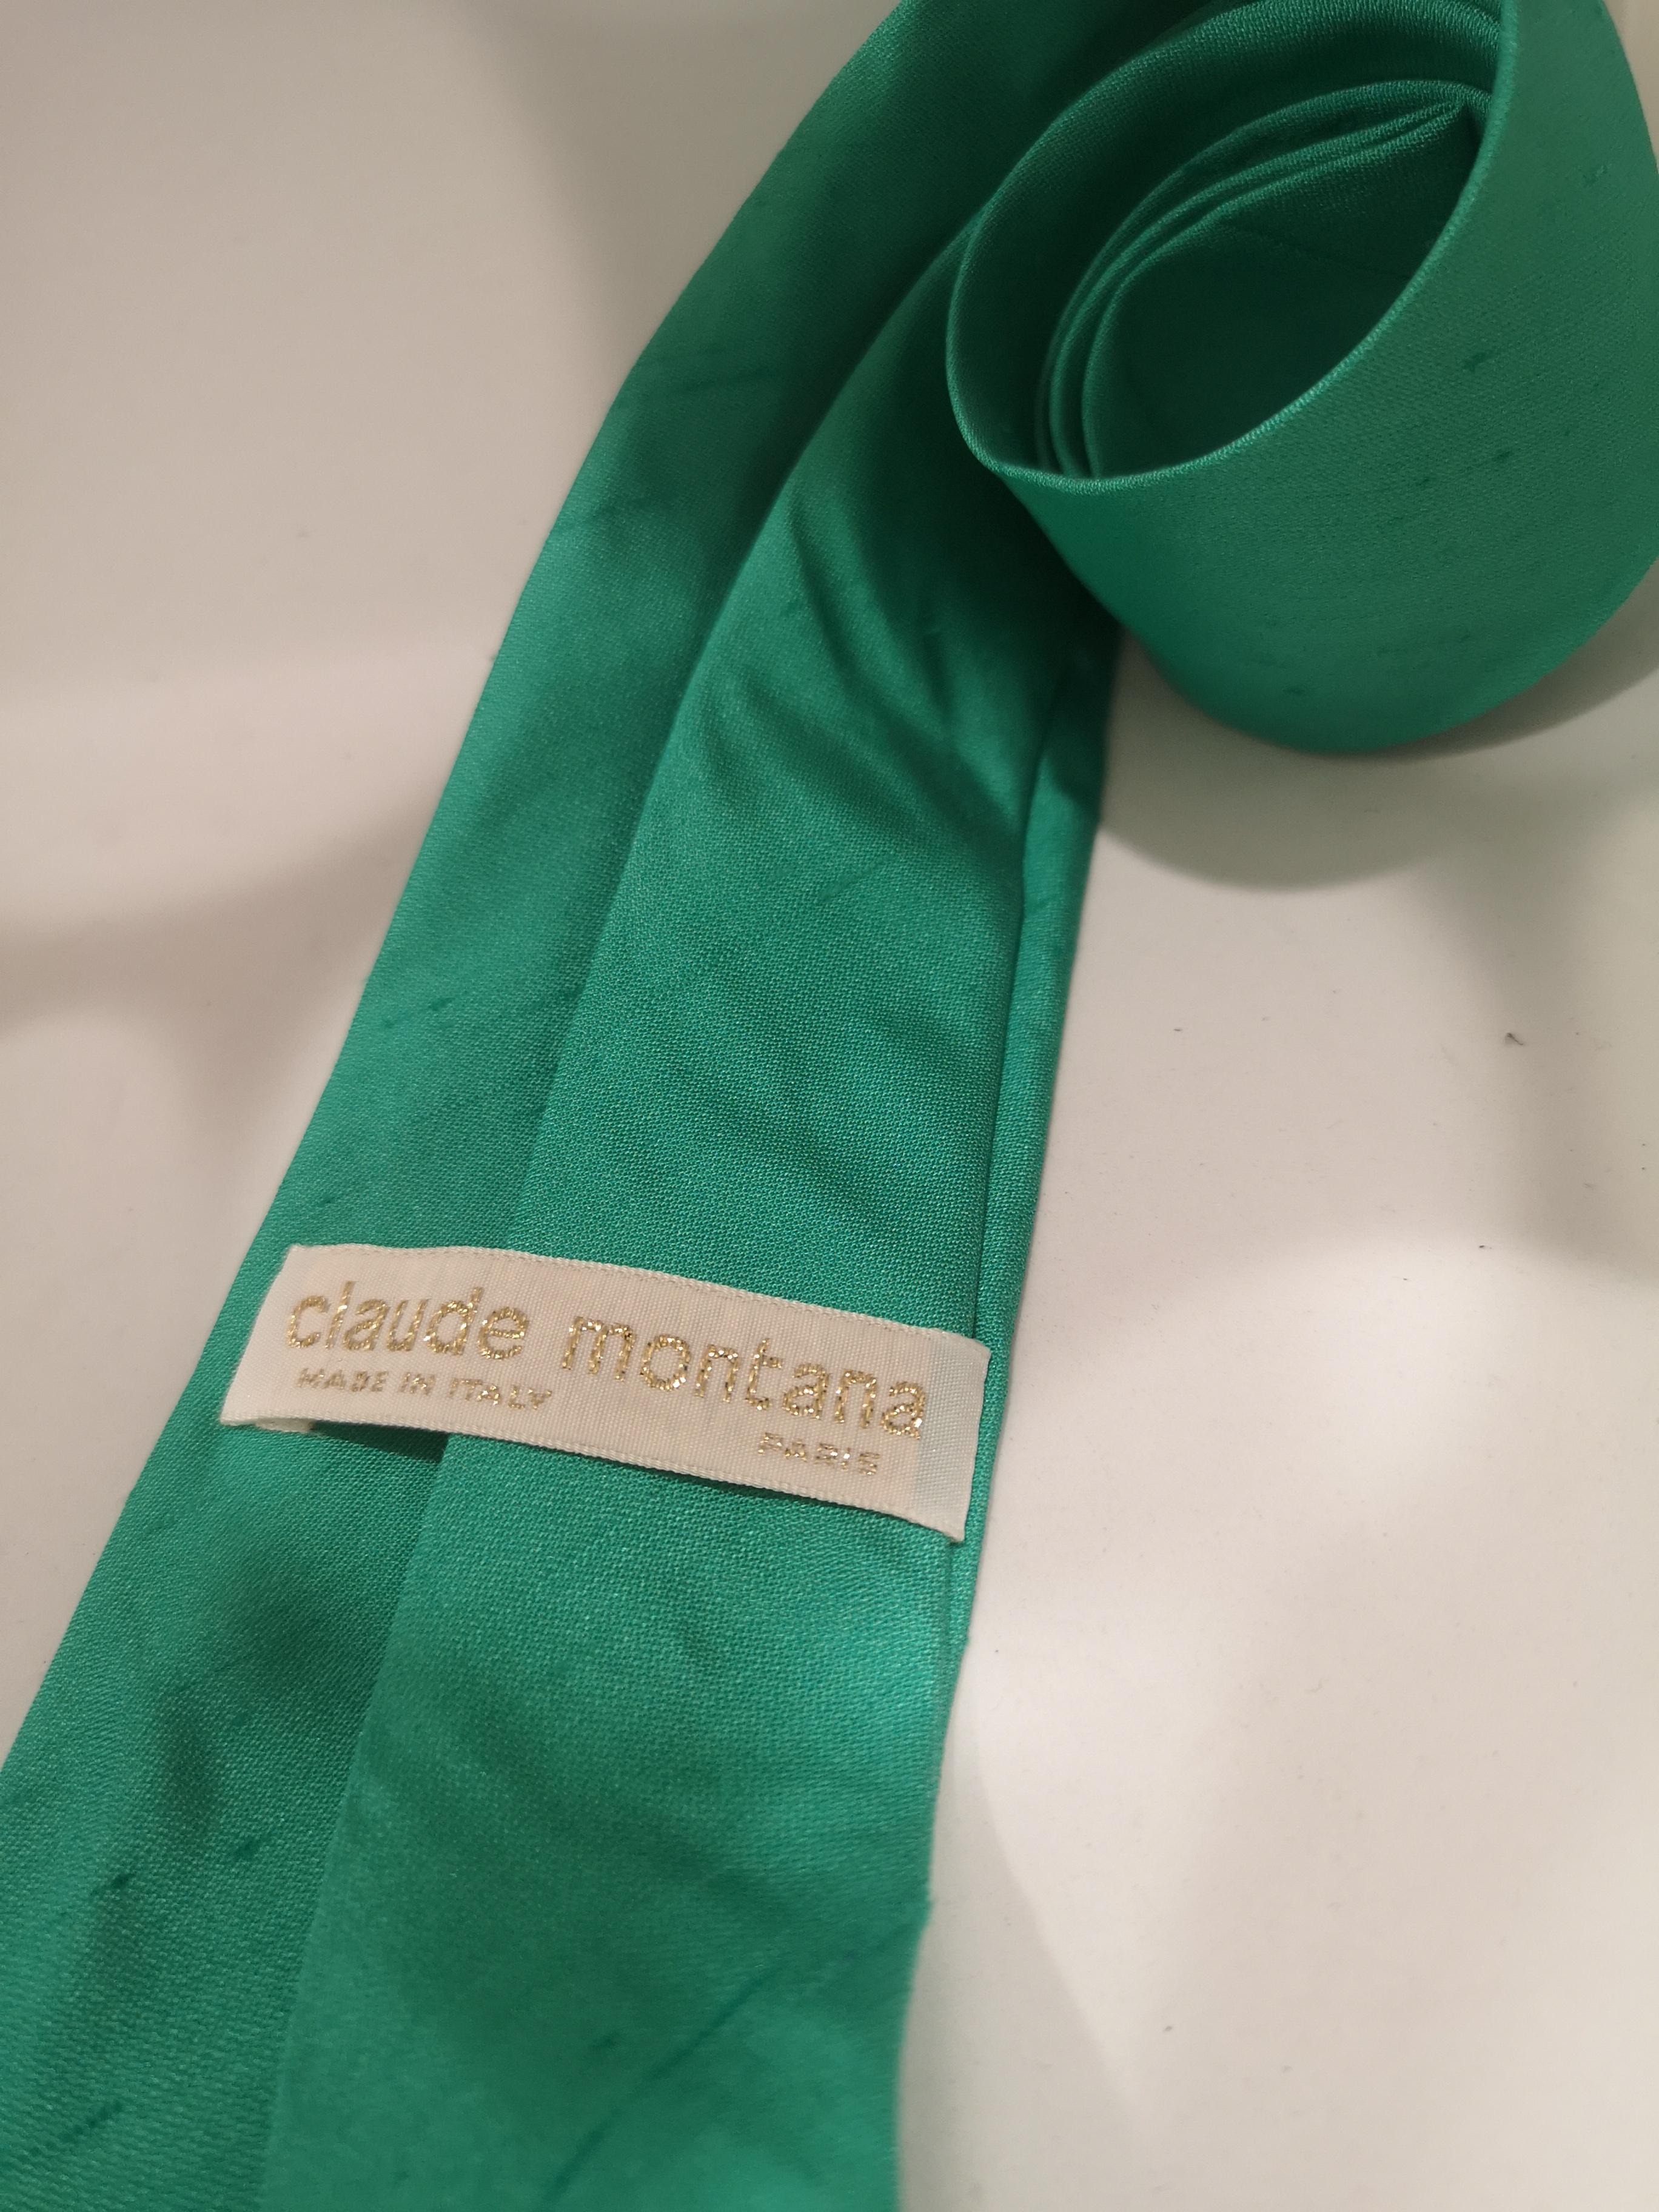 Green Claude Montana green tie